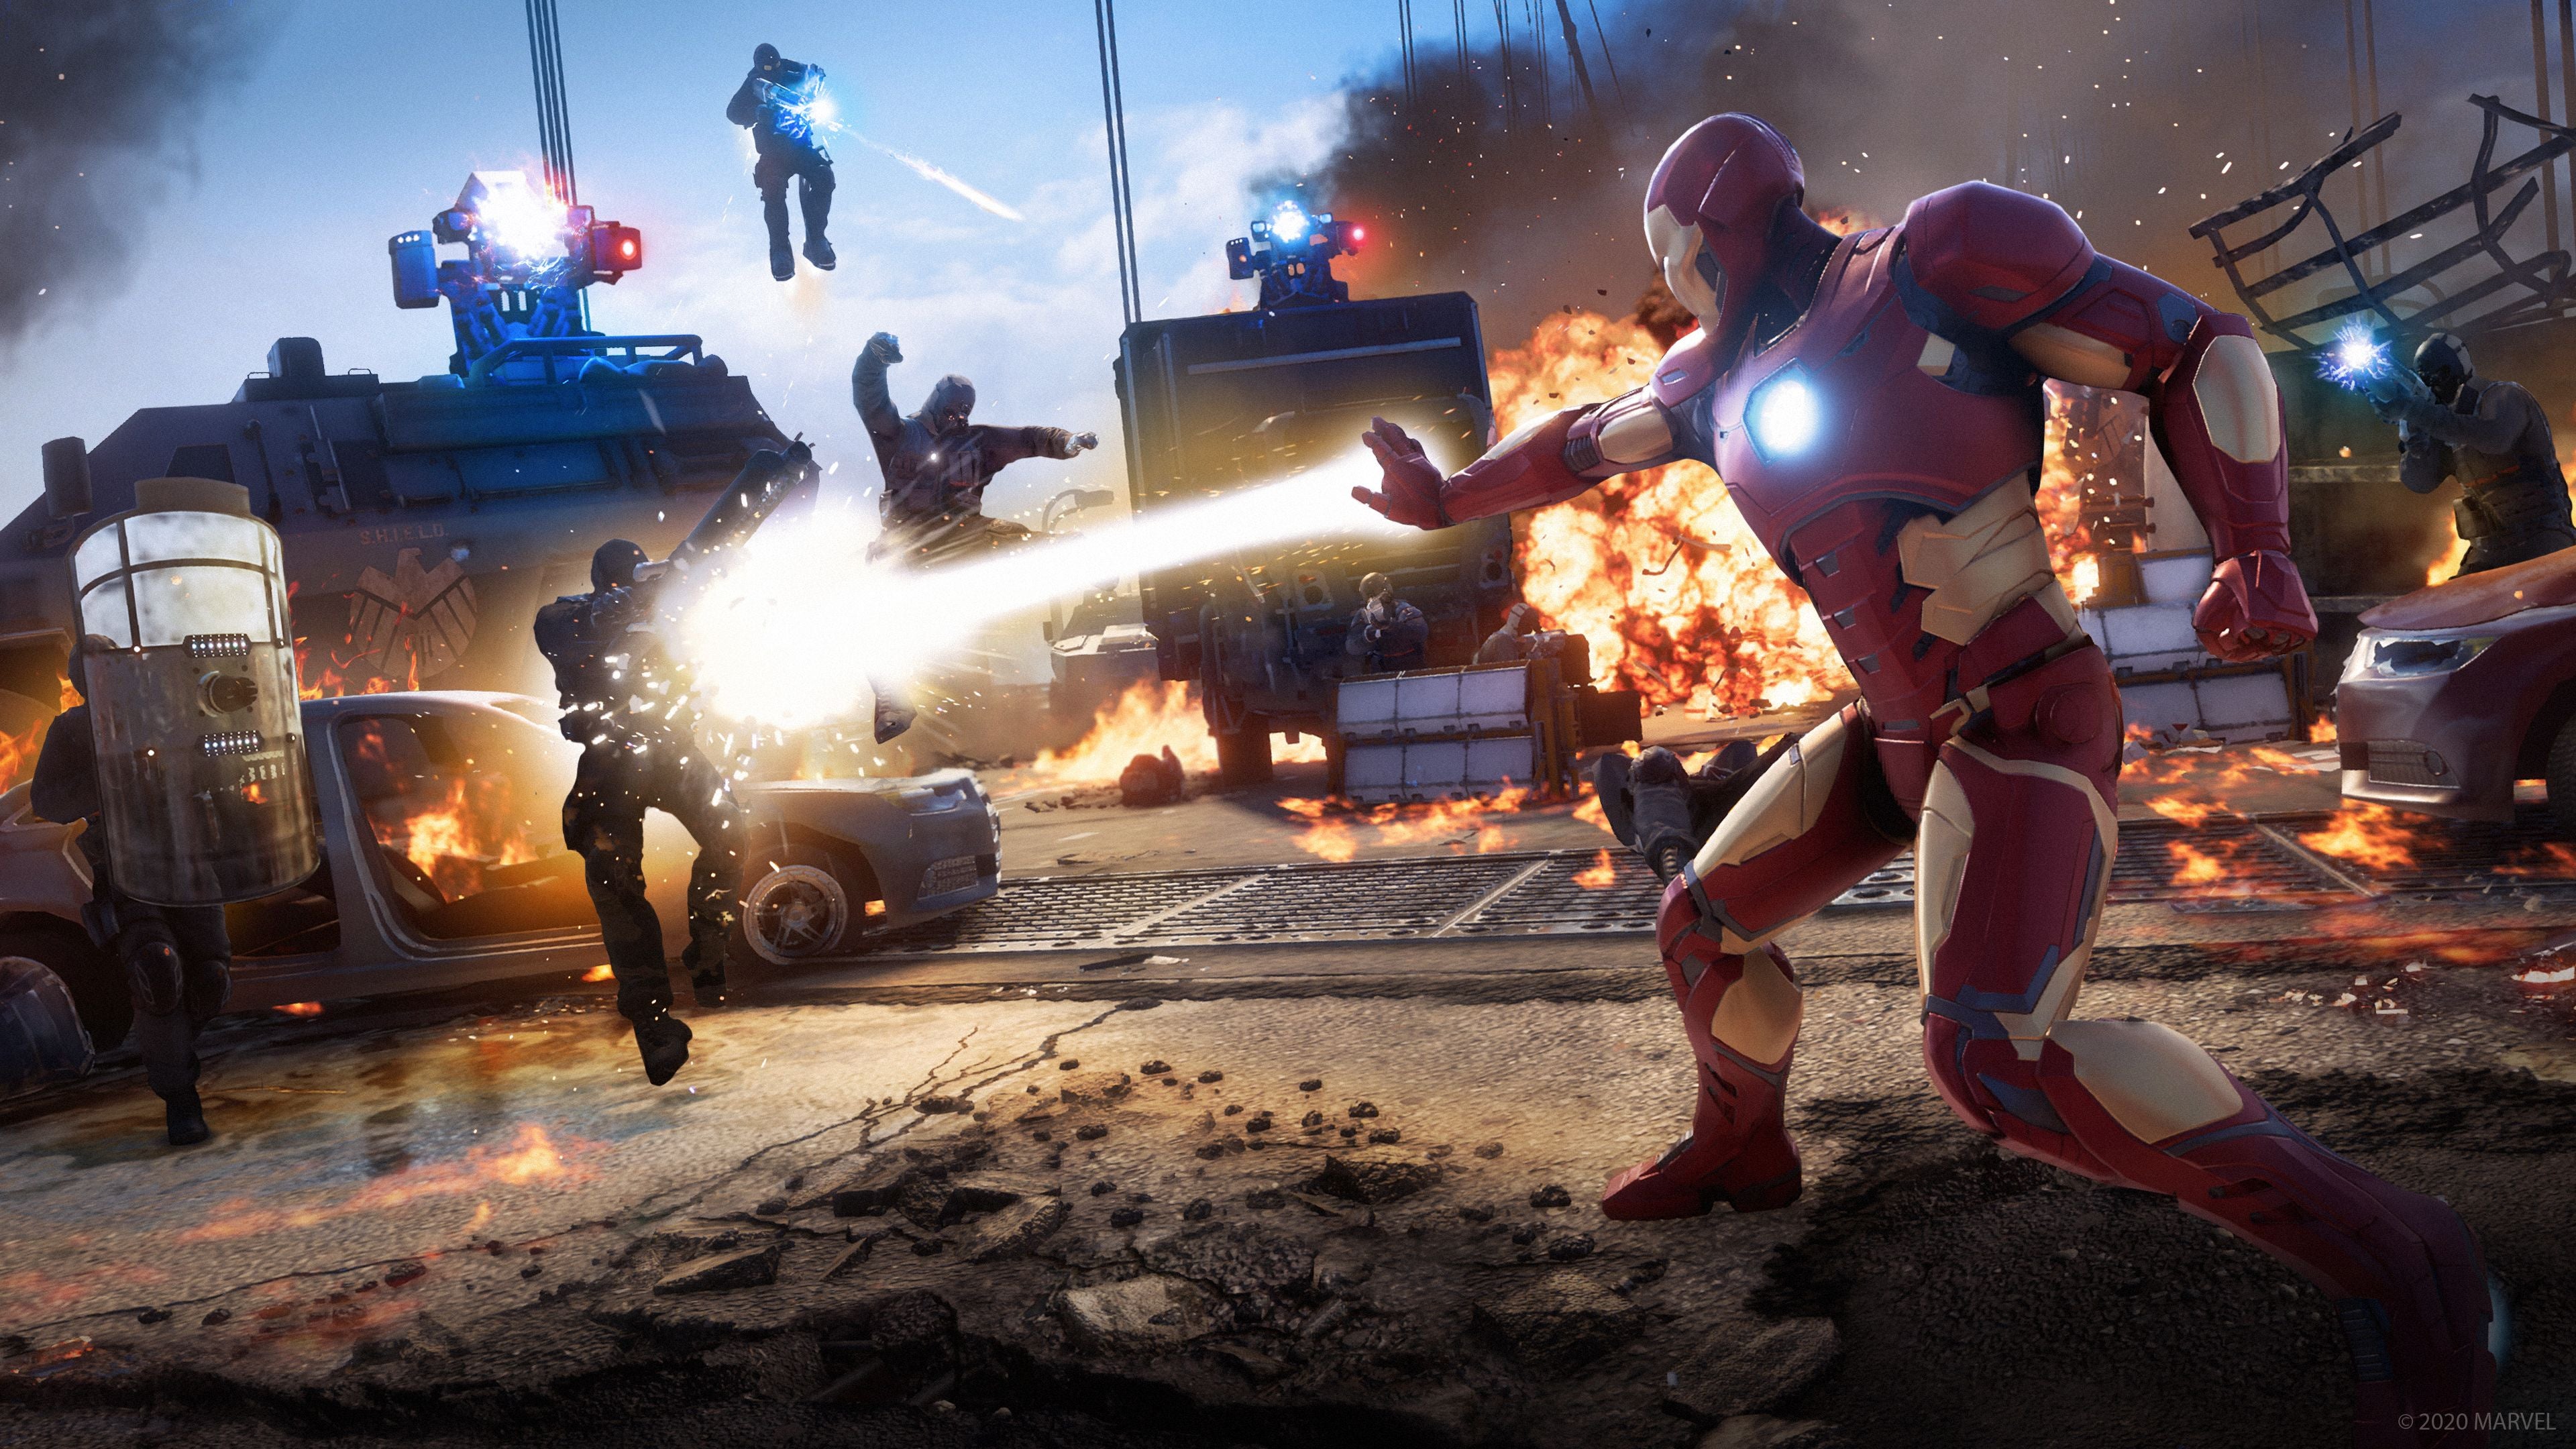 Image for Marvel's Avengers War Table stream set for September 1